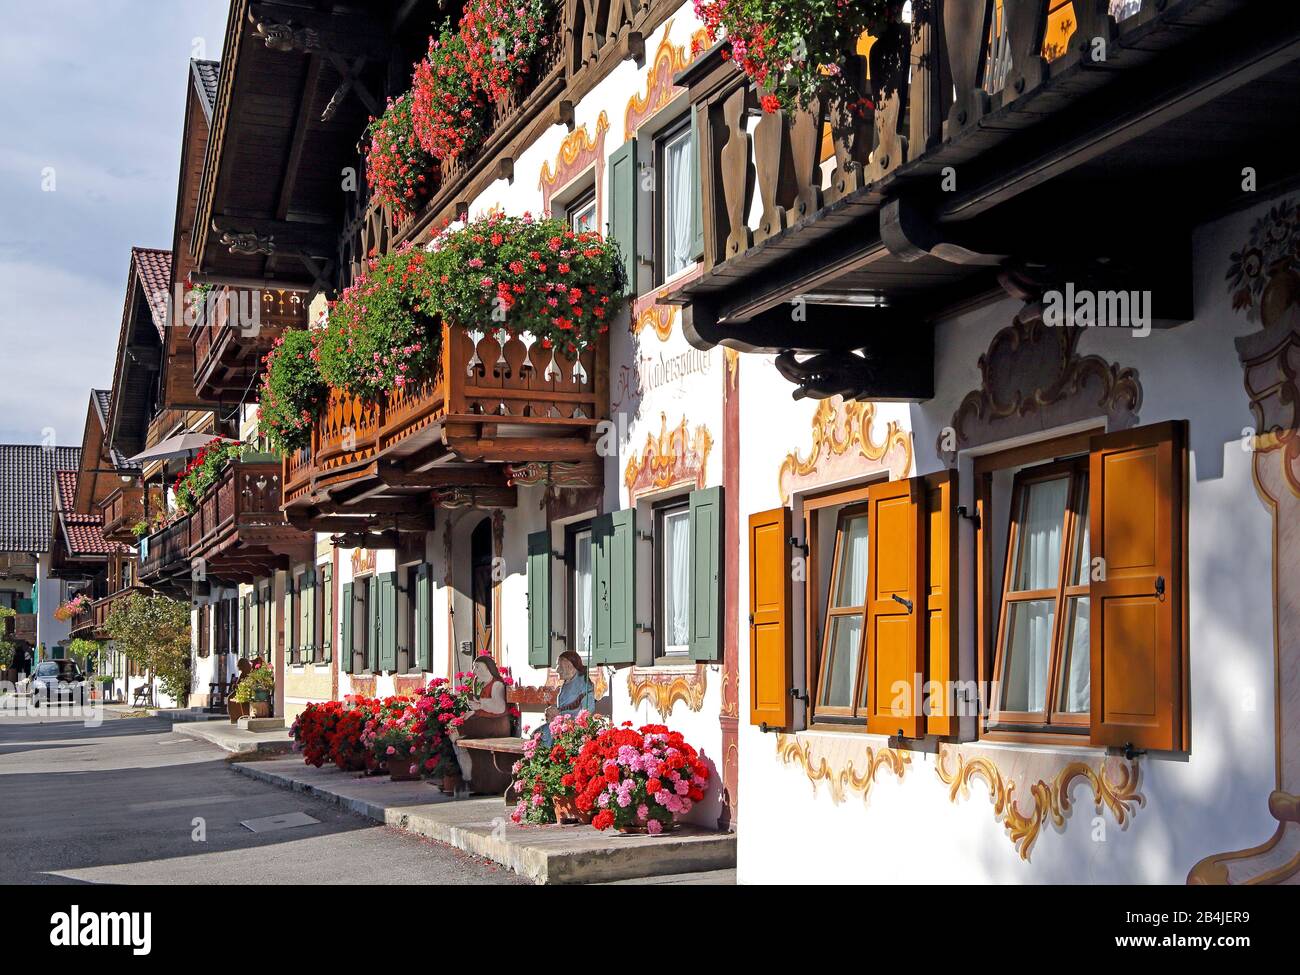 Traditional Upper Bavarian villas with flower balconies, Garmisch-Partenkirchen, Werdenfelser Land, Upper Bavaria, Bavaria, Germany Stock Photo